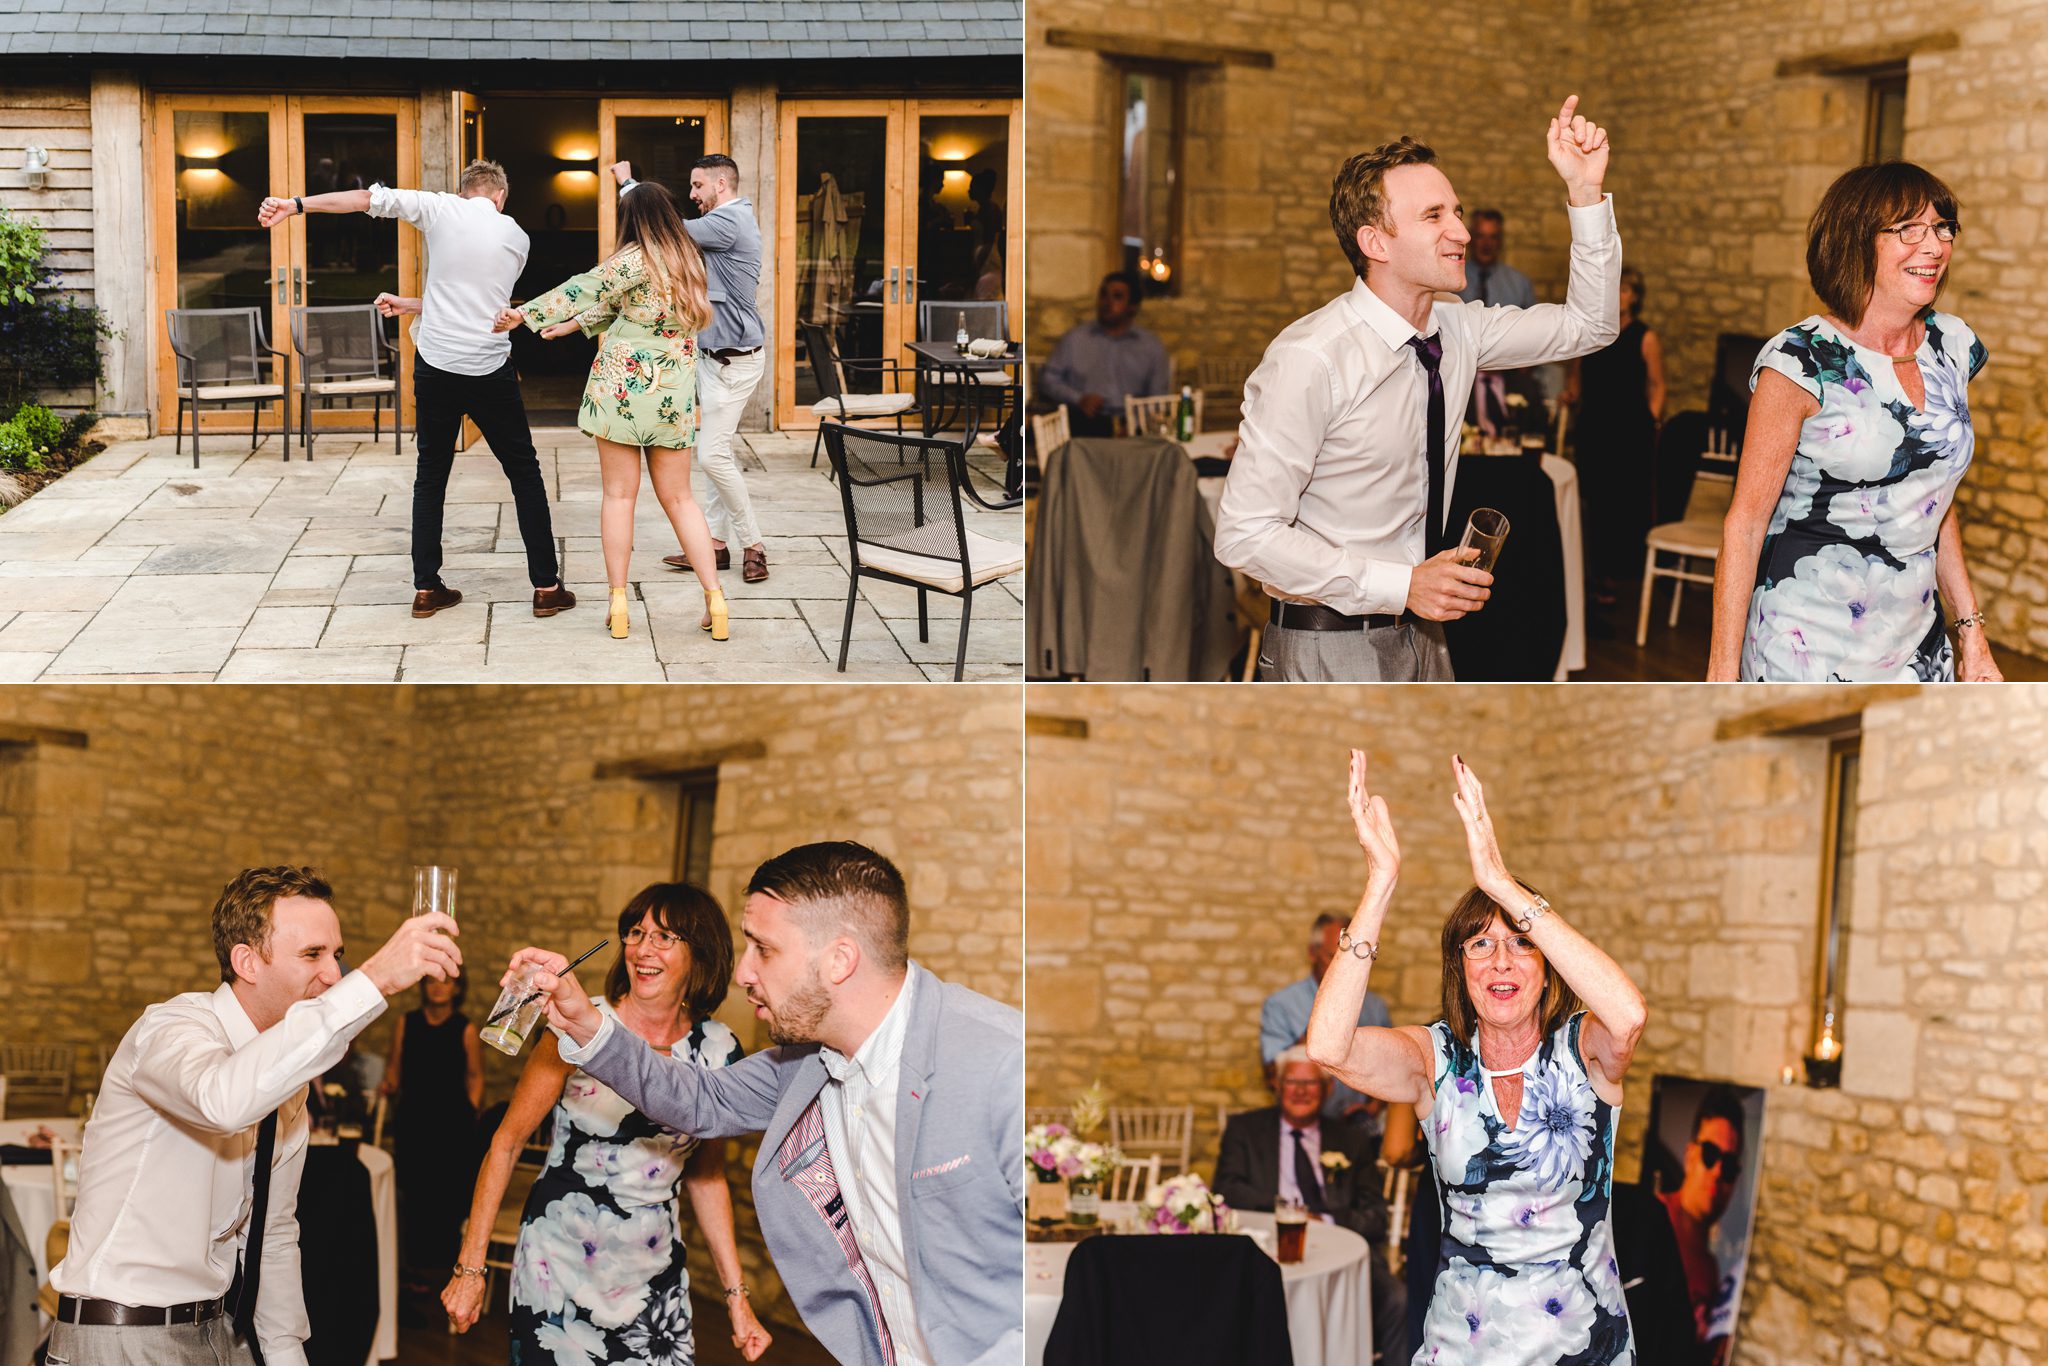 Wedding guests dancing at Upcote